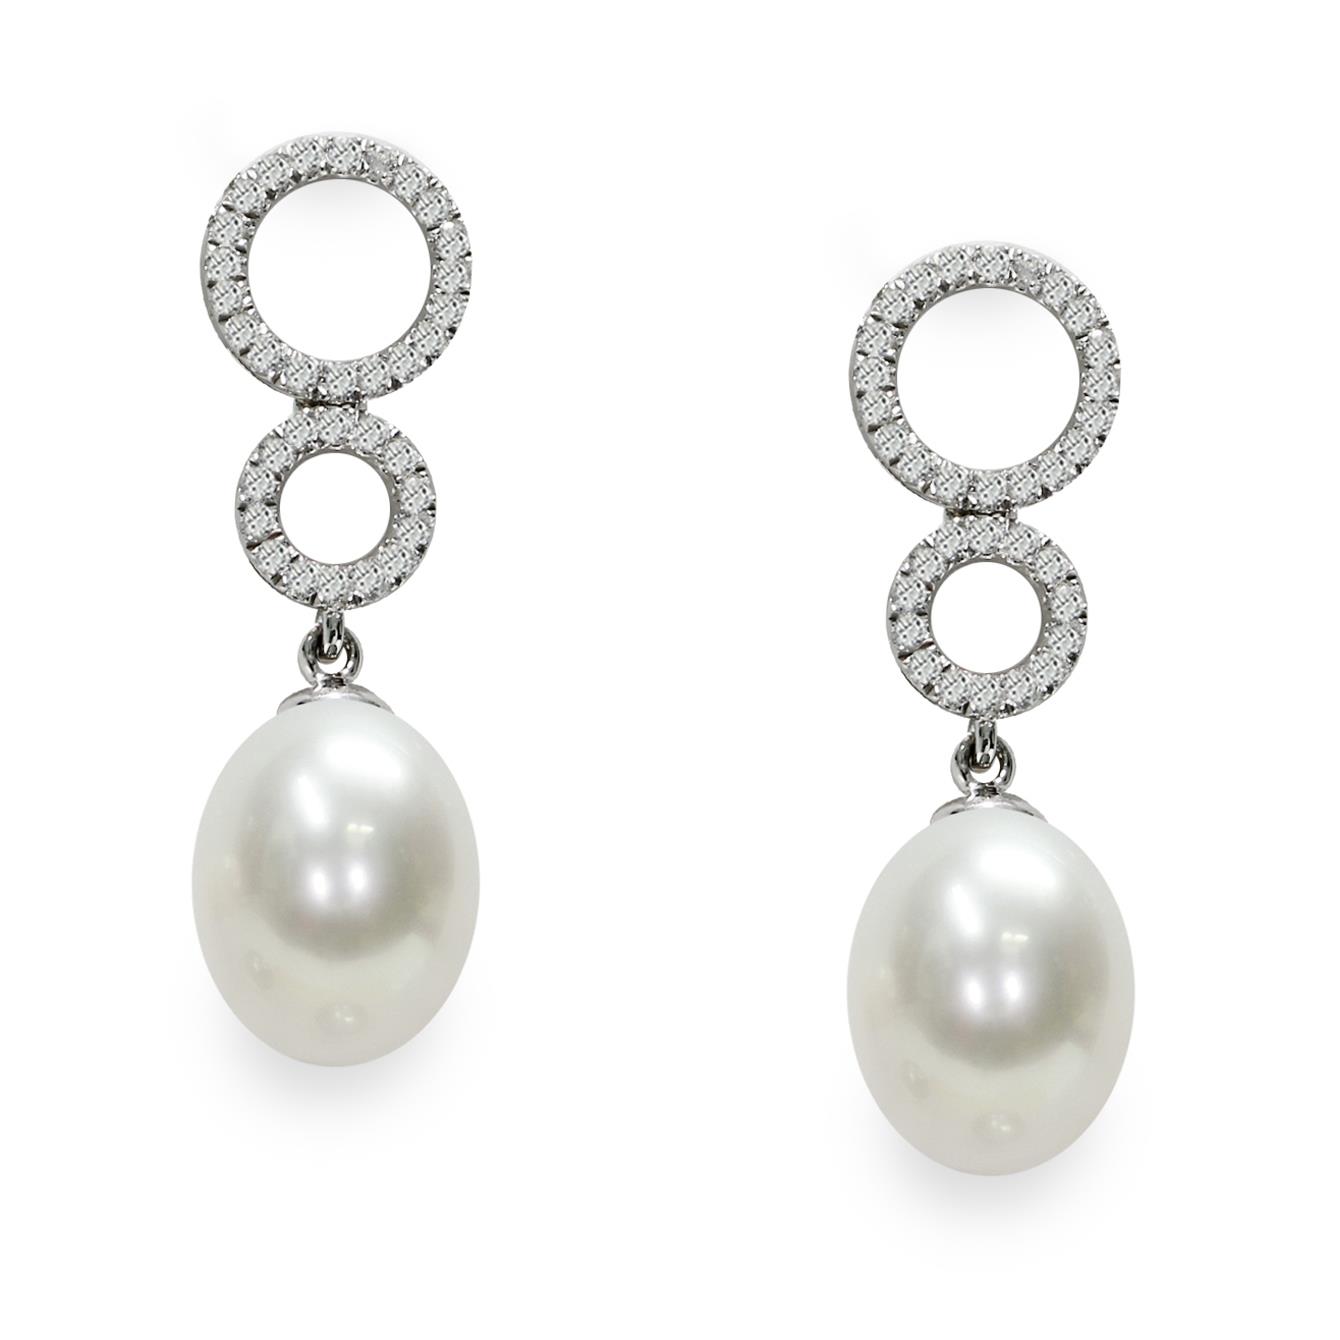 Orecchini pendenti in argento con perle piena perlagione e zirconi - MAYUMI